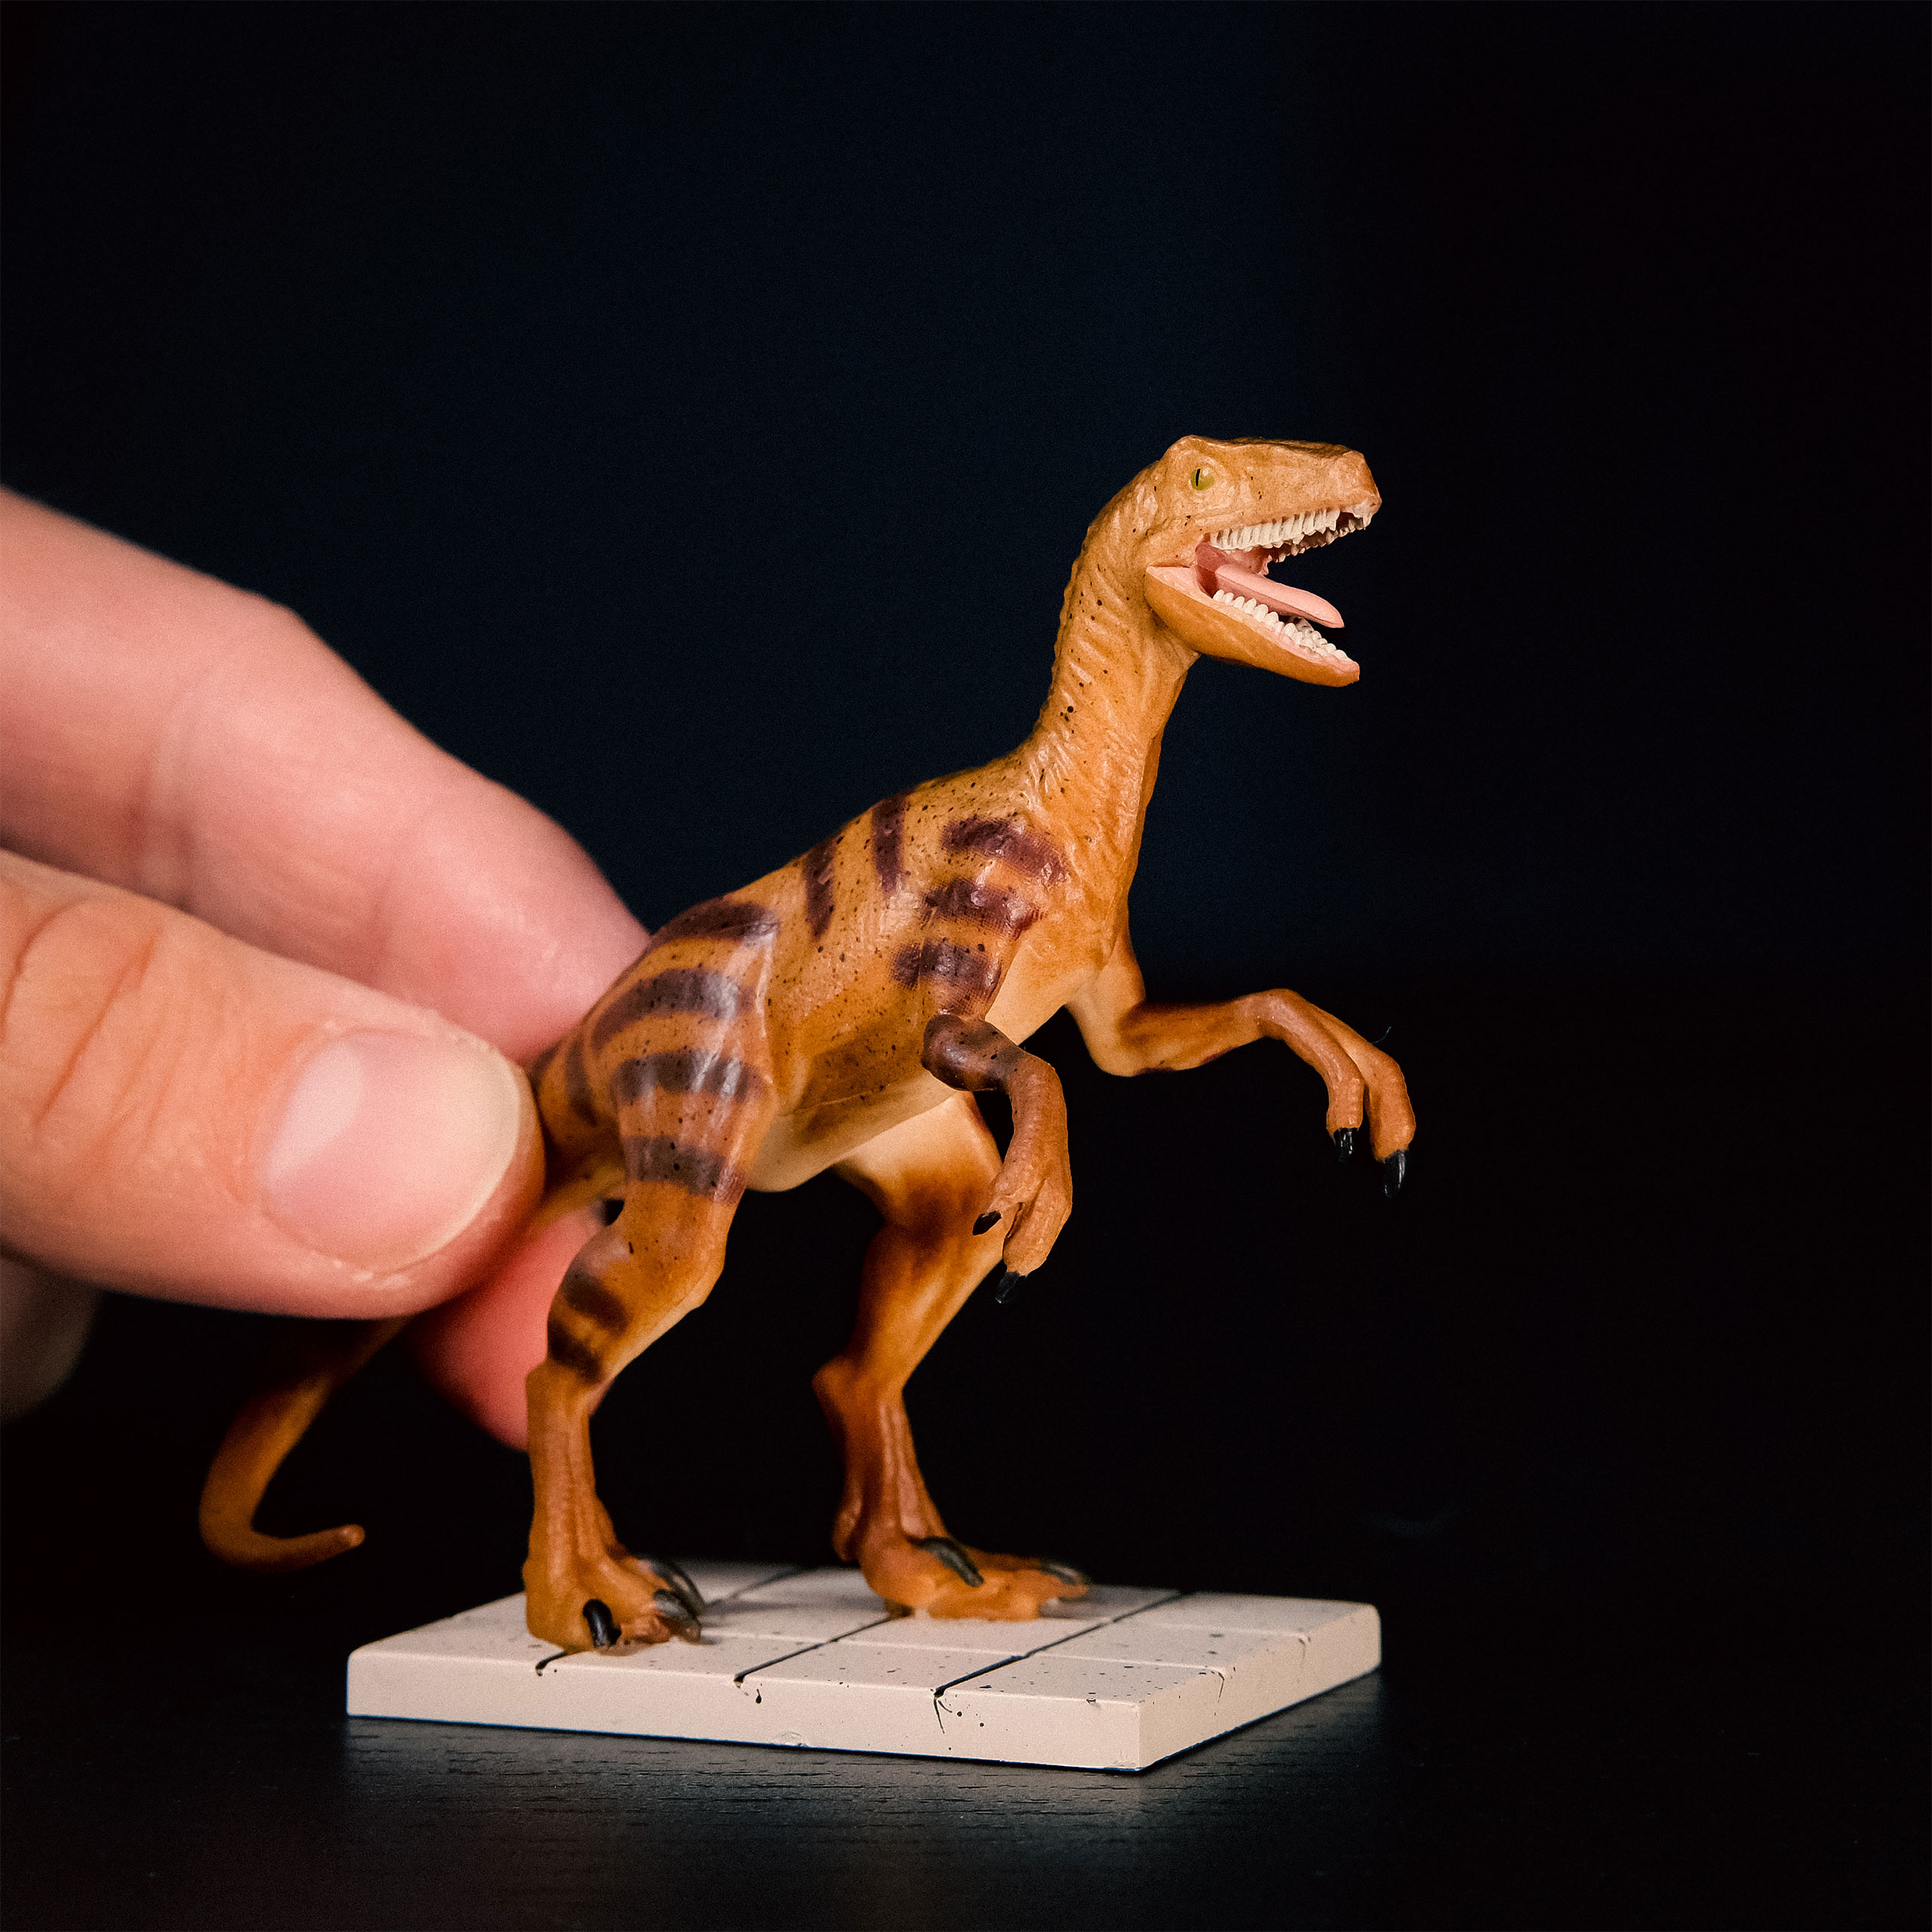 Jurassic Park - Velociraptor Figurenset